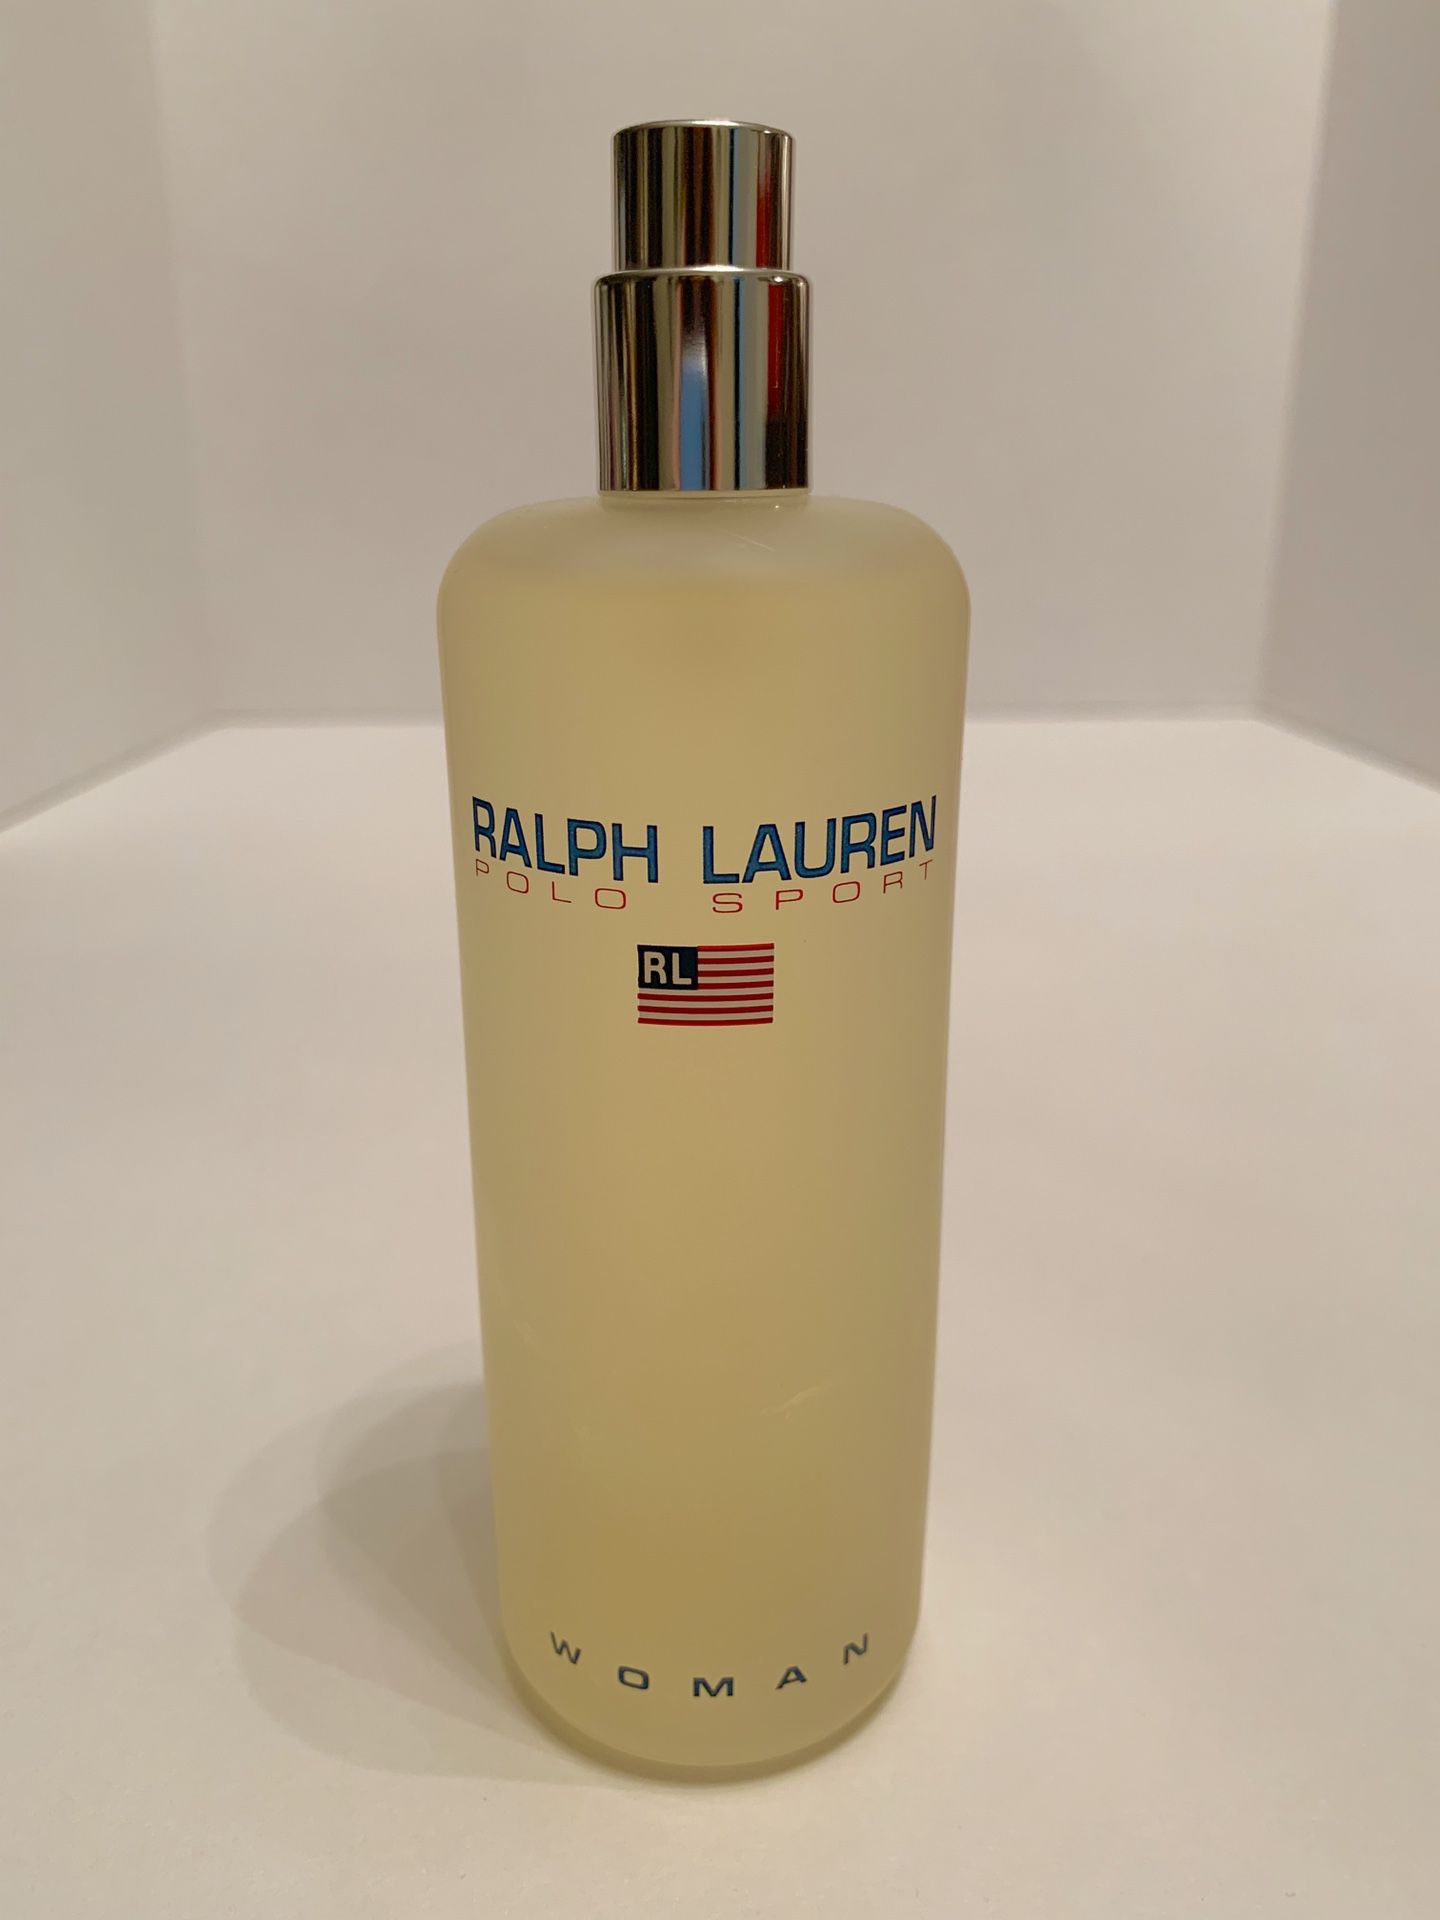 Ralph Lauren POLO SPORT Woman Fragrance 5.1 oz Largest bottle